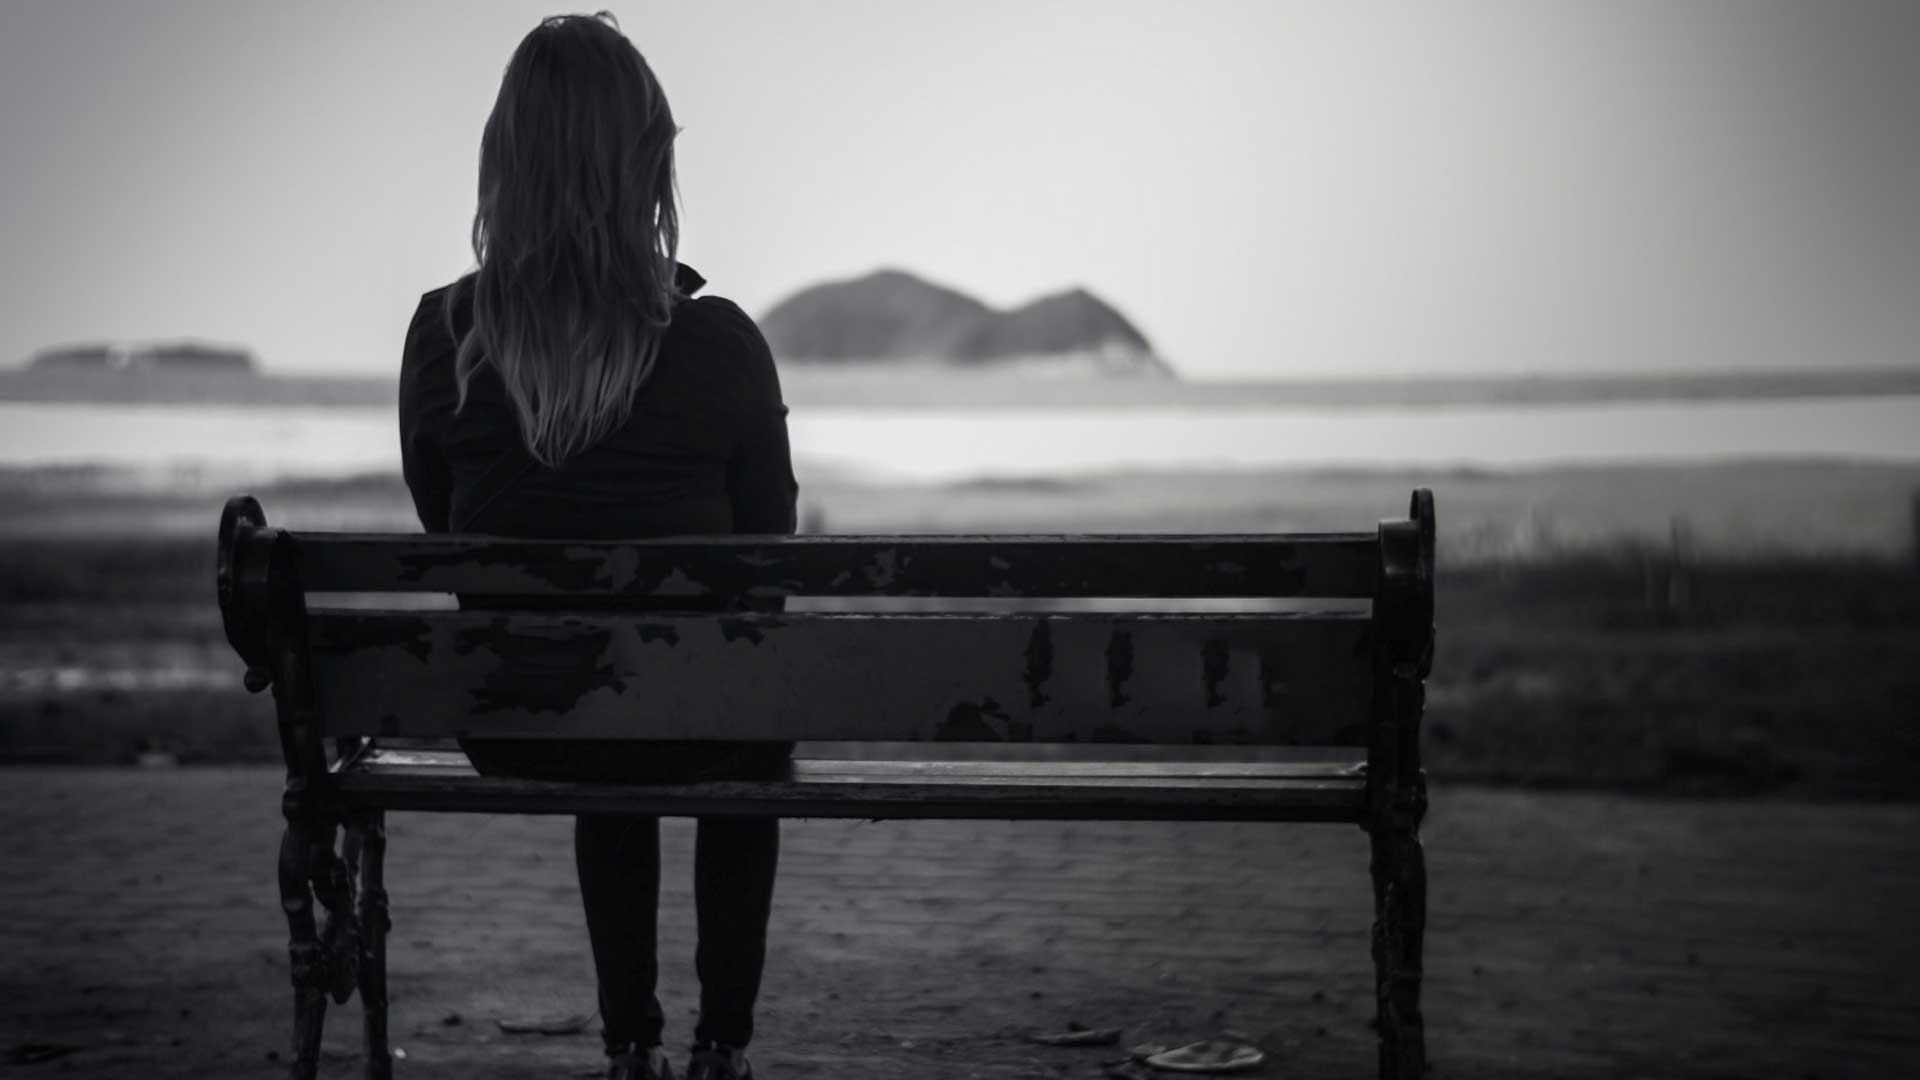 γυναίκα κάθεται σε ένα παγκάκι με θέα τη θάλασσα